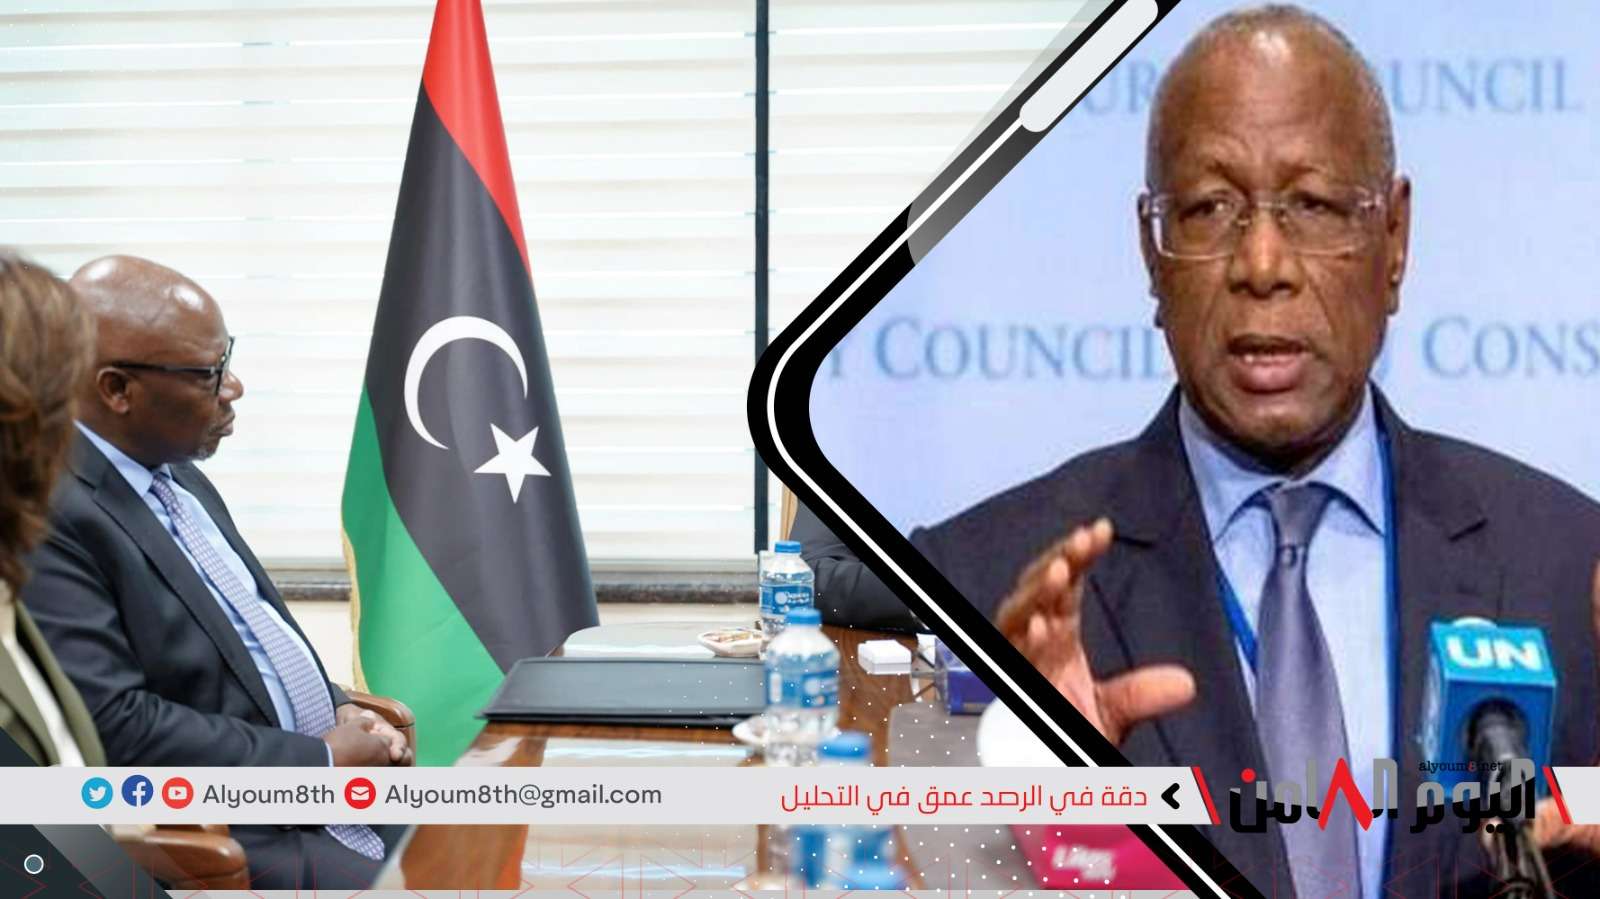 تباين المواقف الدولية والإقليمية.. هل يتحول دور البعثة الأممية في ليبيا من "الوساطة" إلى "الوصاية"؟